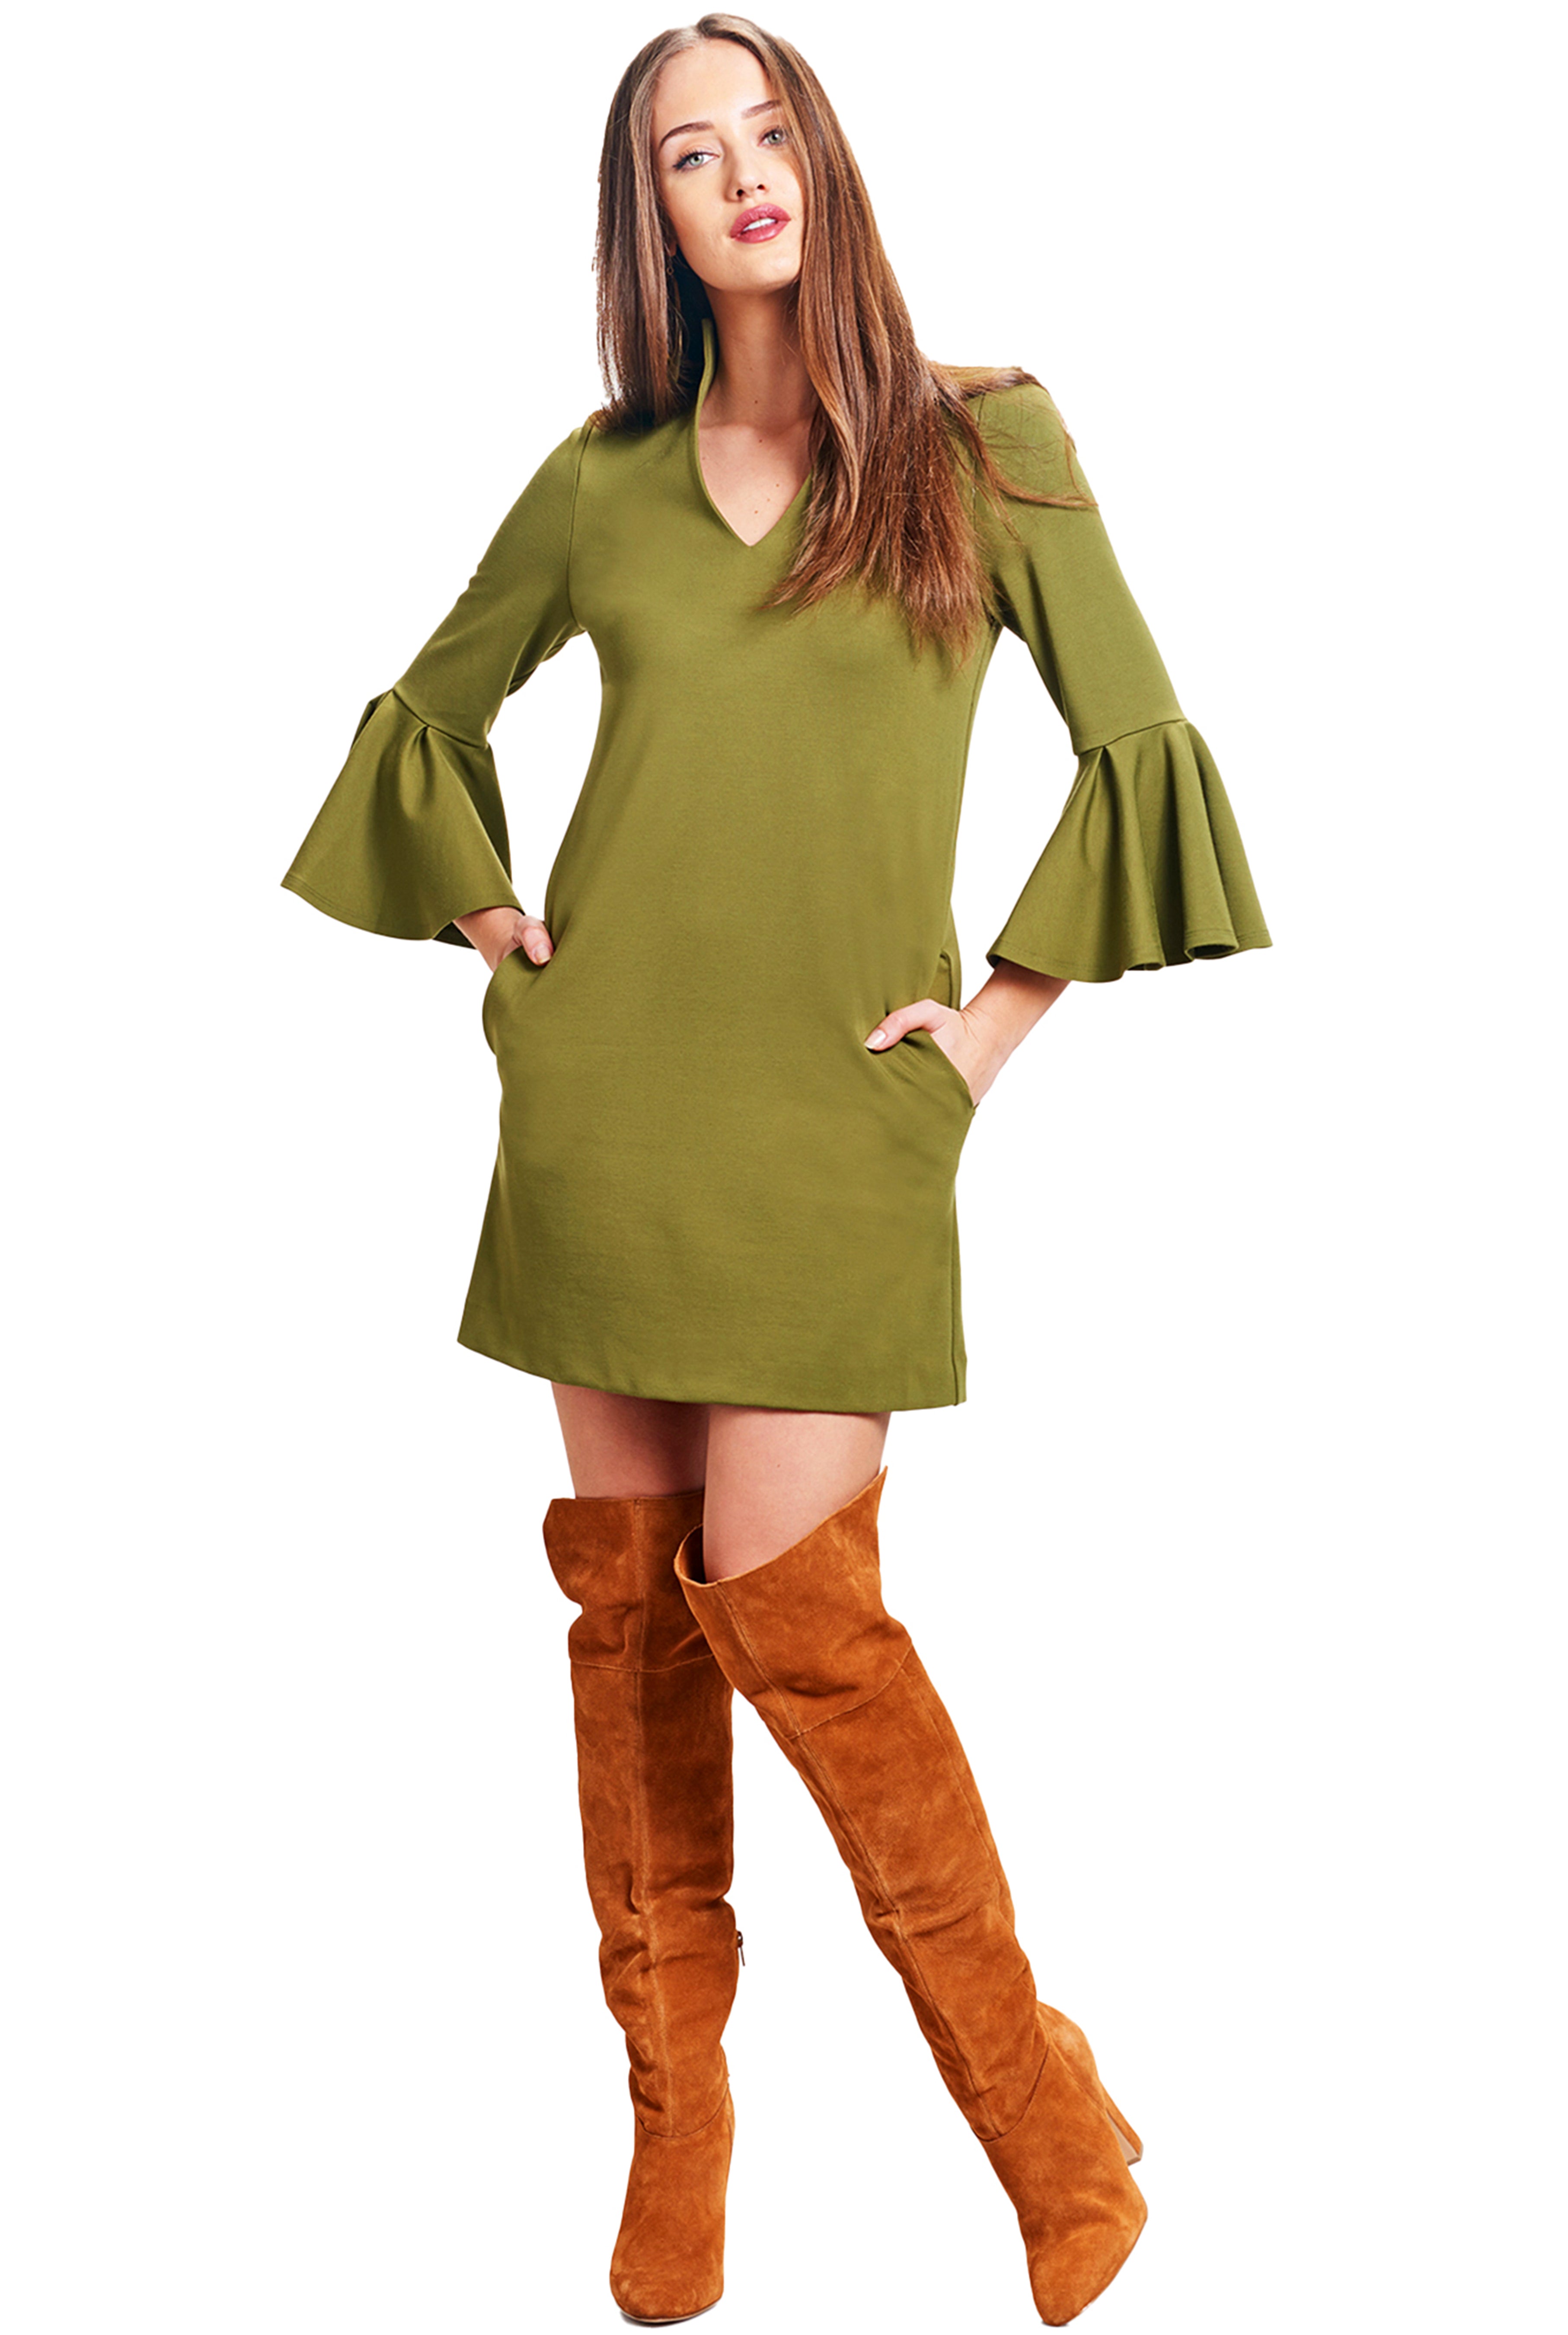 Model wearing olive knit Ponte mini shift dress with v-neckline, 3/4 bell sleeves and side slit pockets.